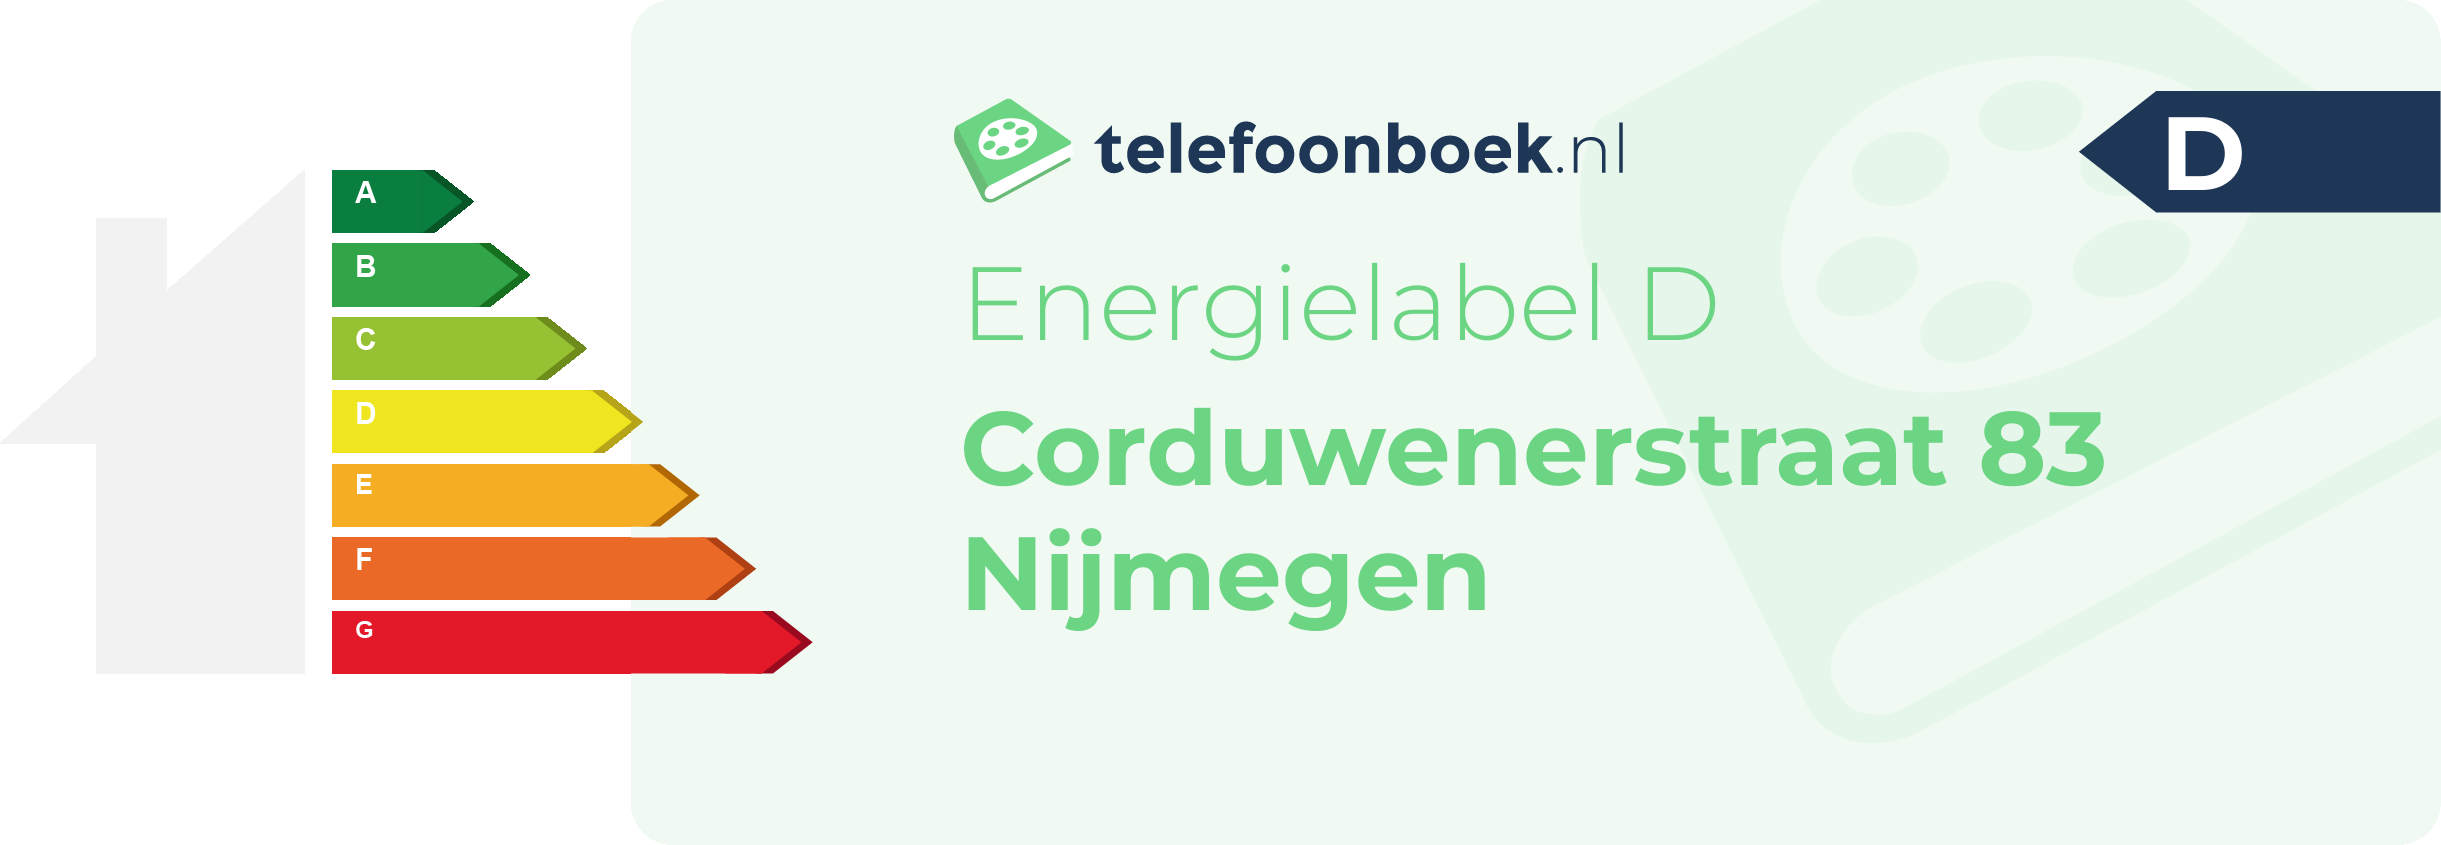 Energielabel Corduwenerstraat 83 Nijmegen